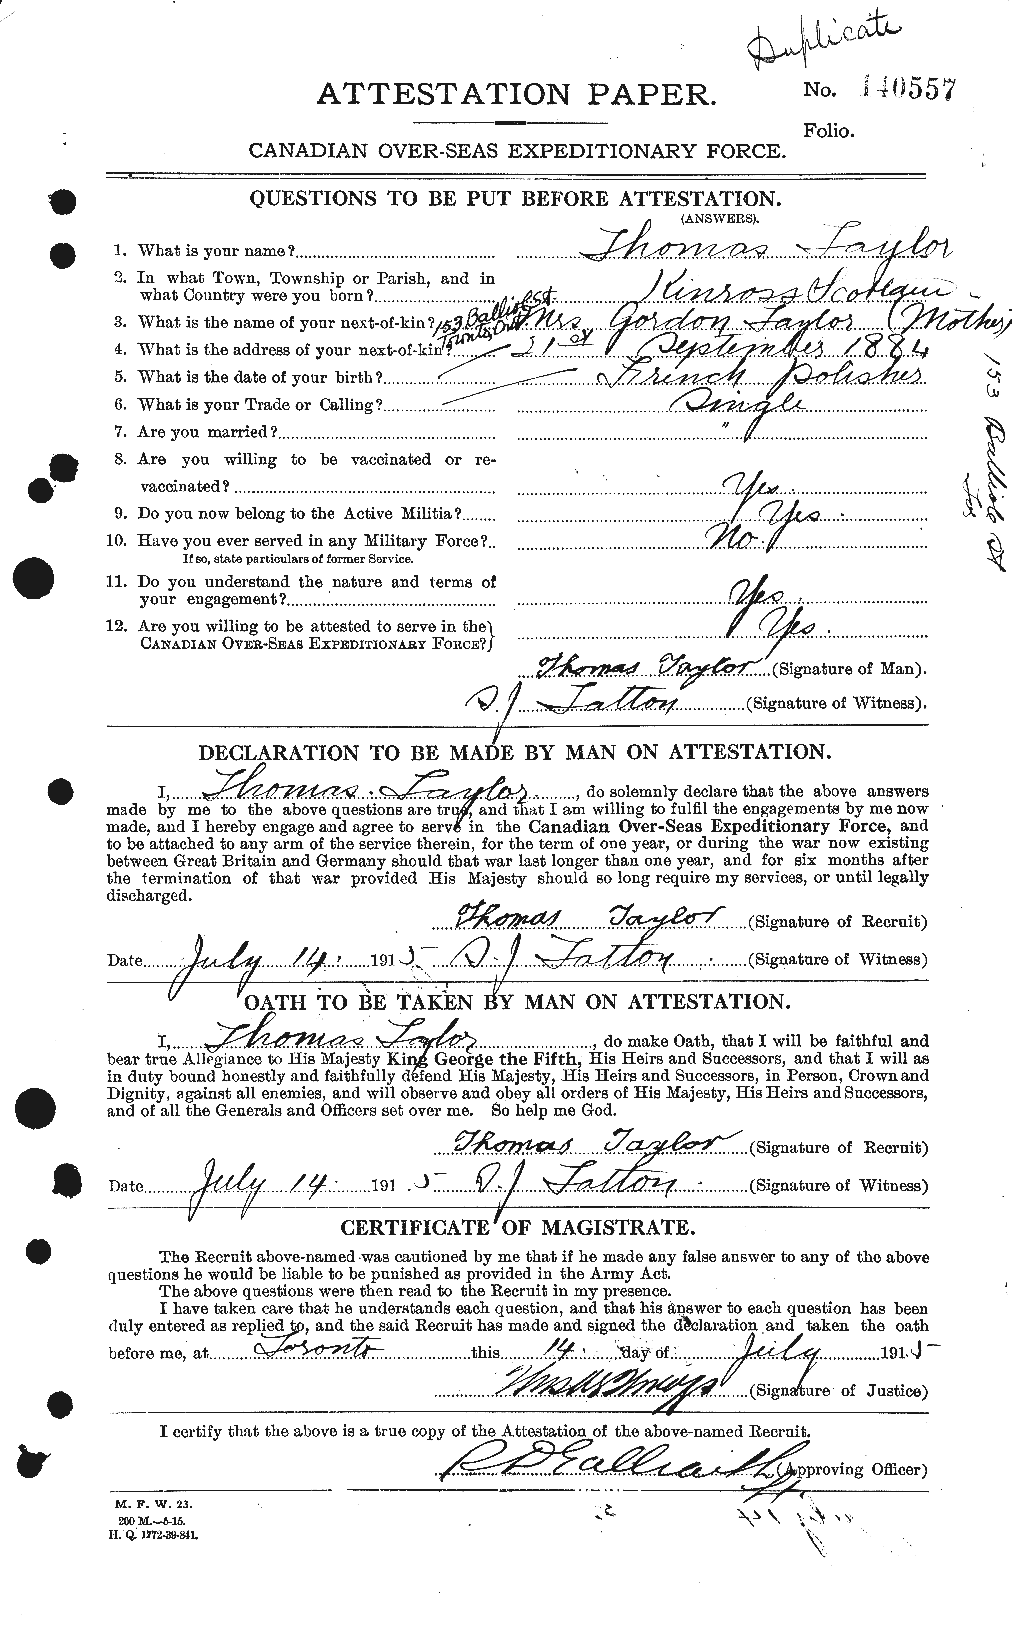 Dossiers du Personnel de la Première Guerre mondiale - CEC 627958a